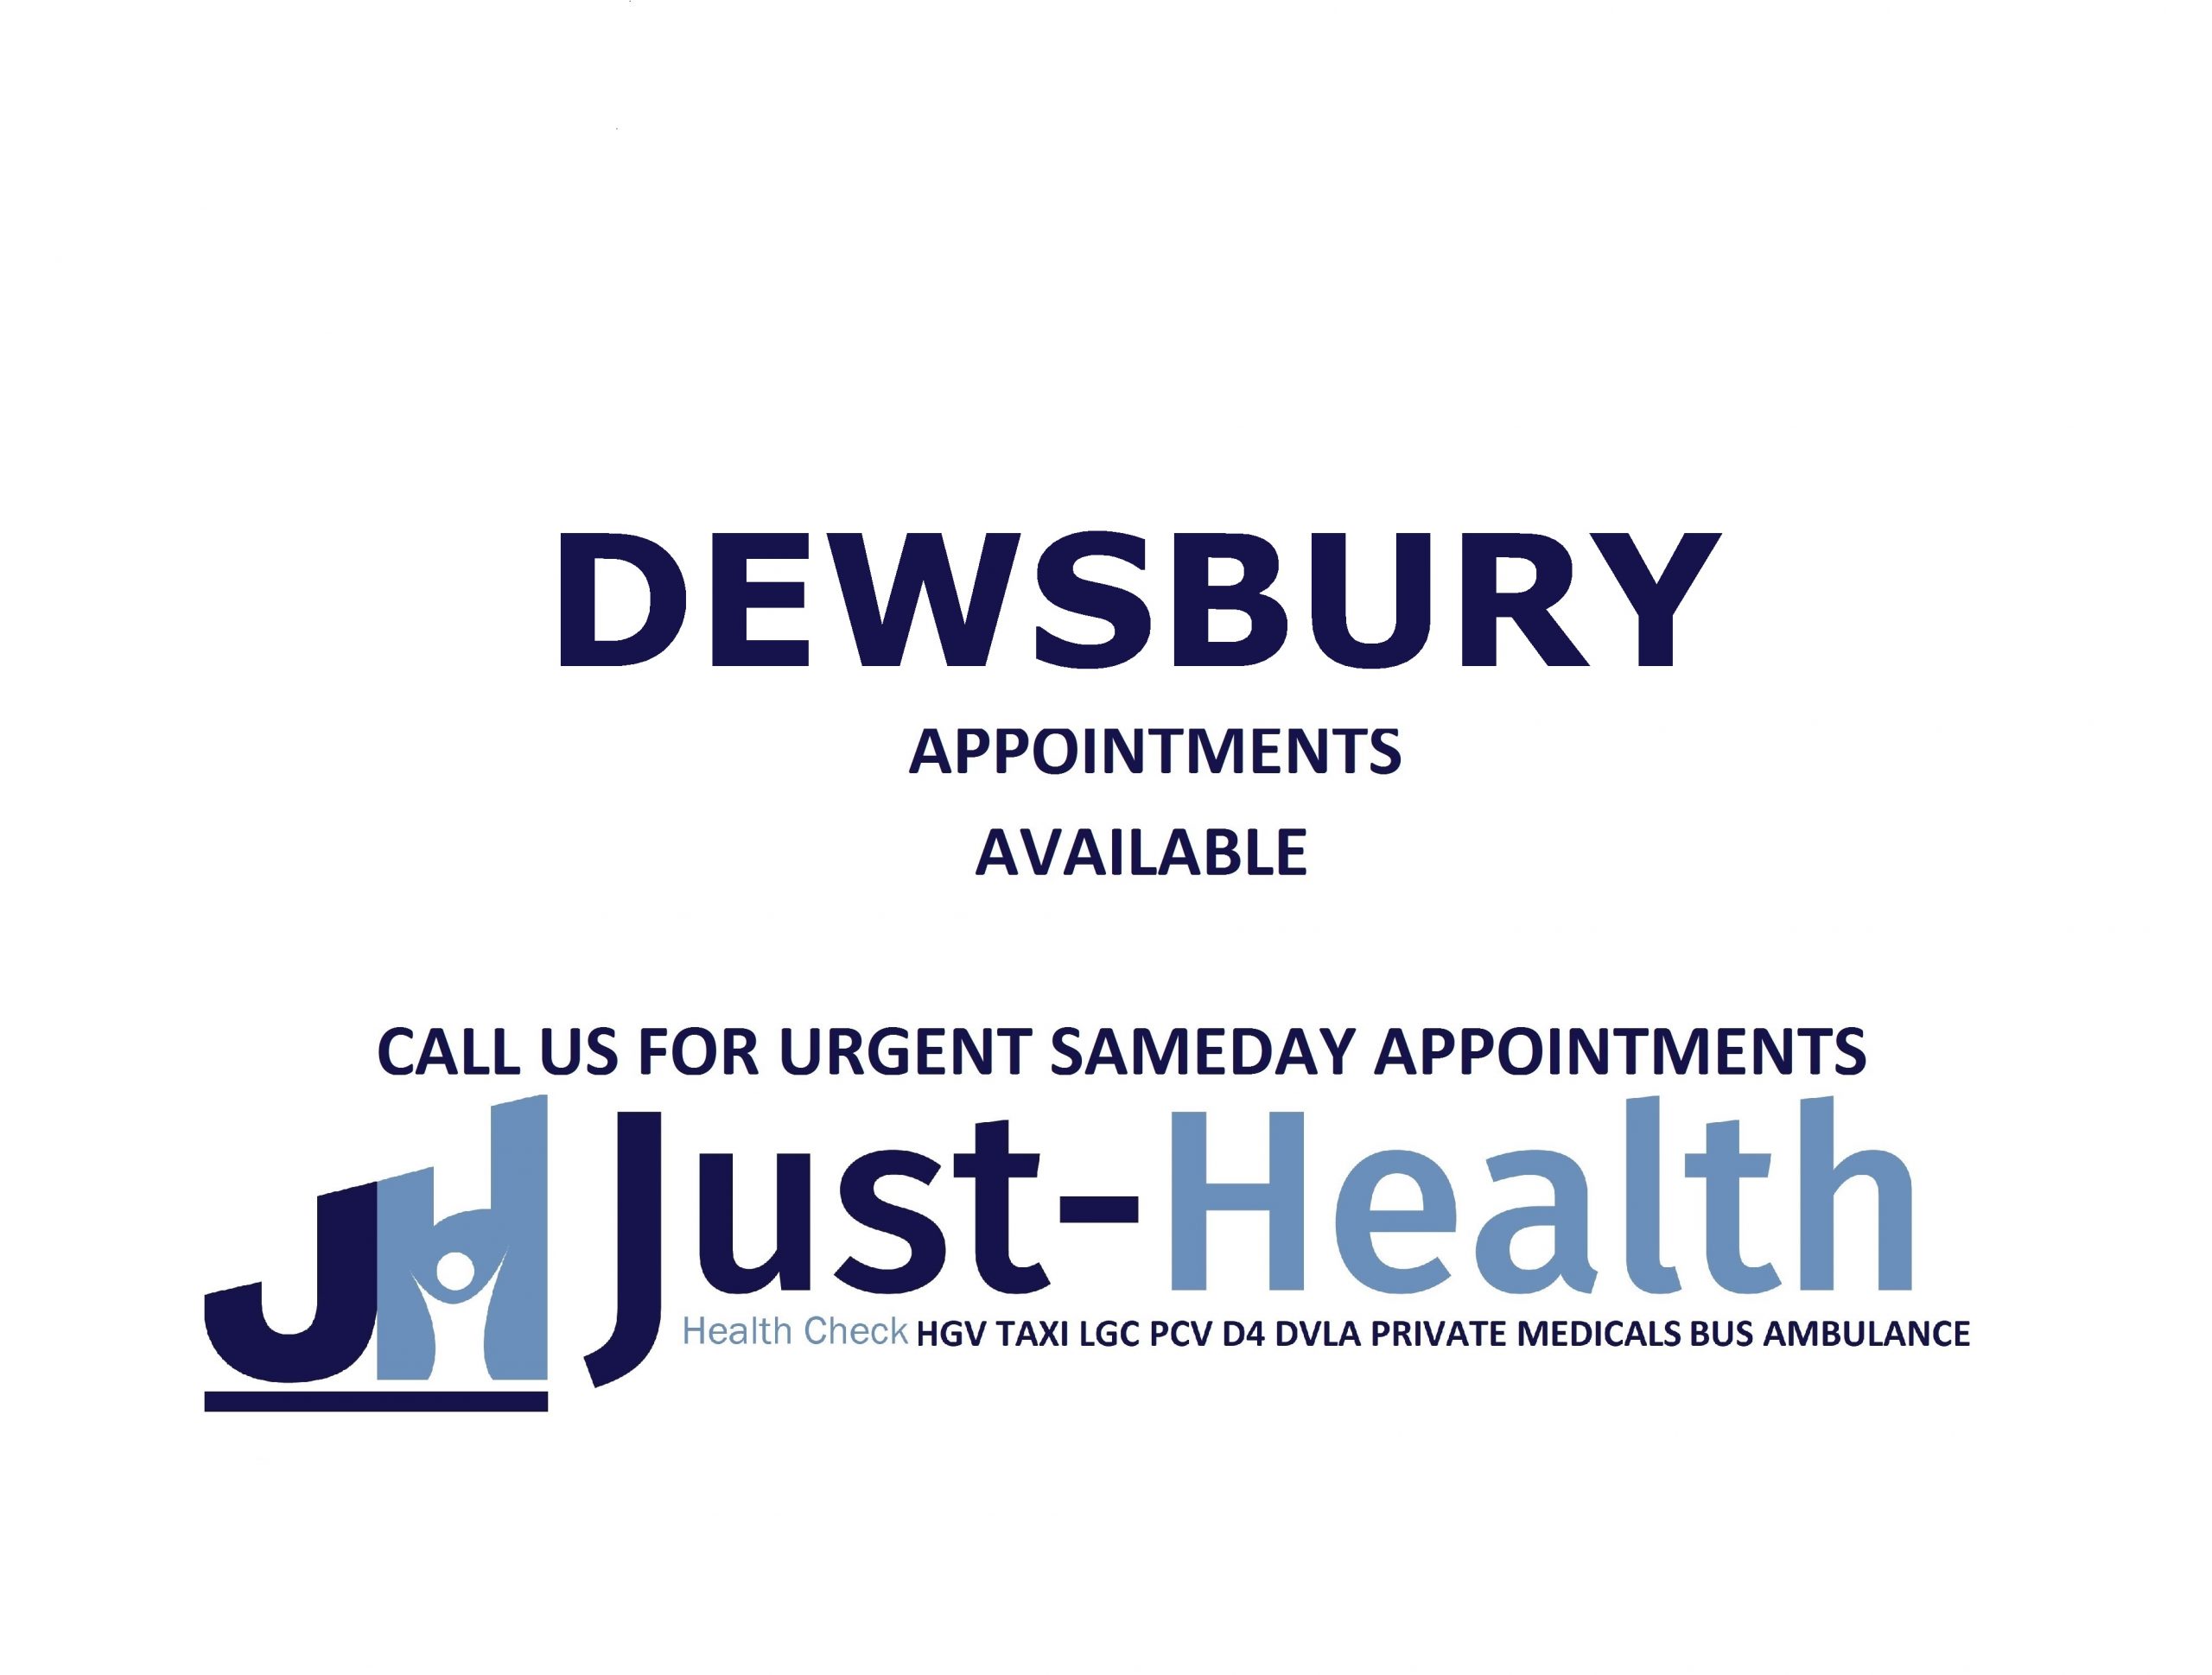 Dewsbury D4 Driver hgv Medicals